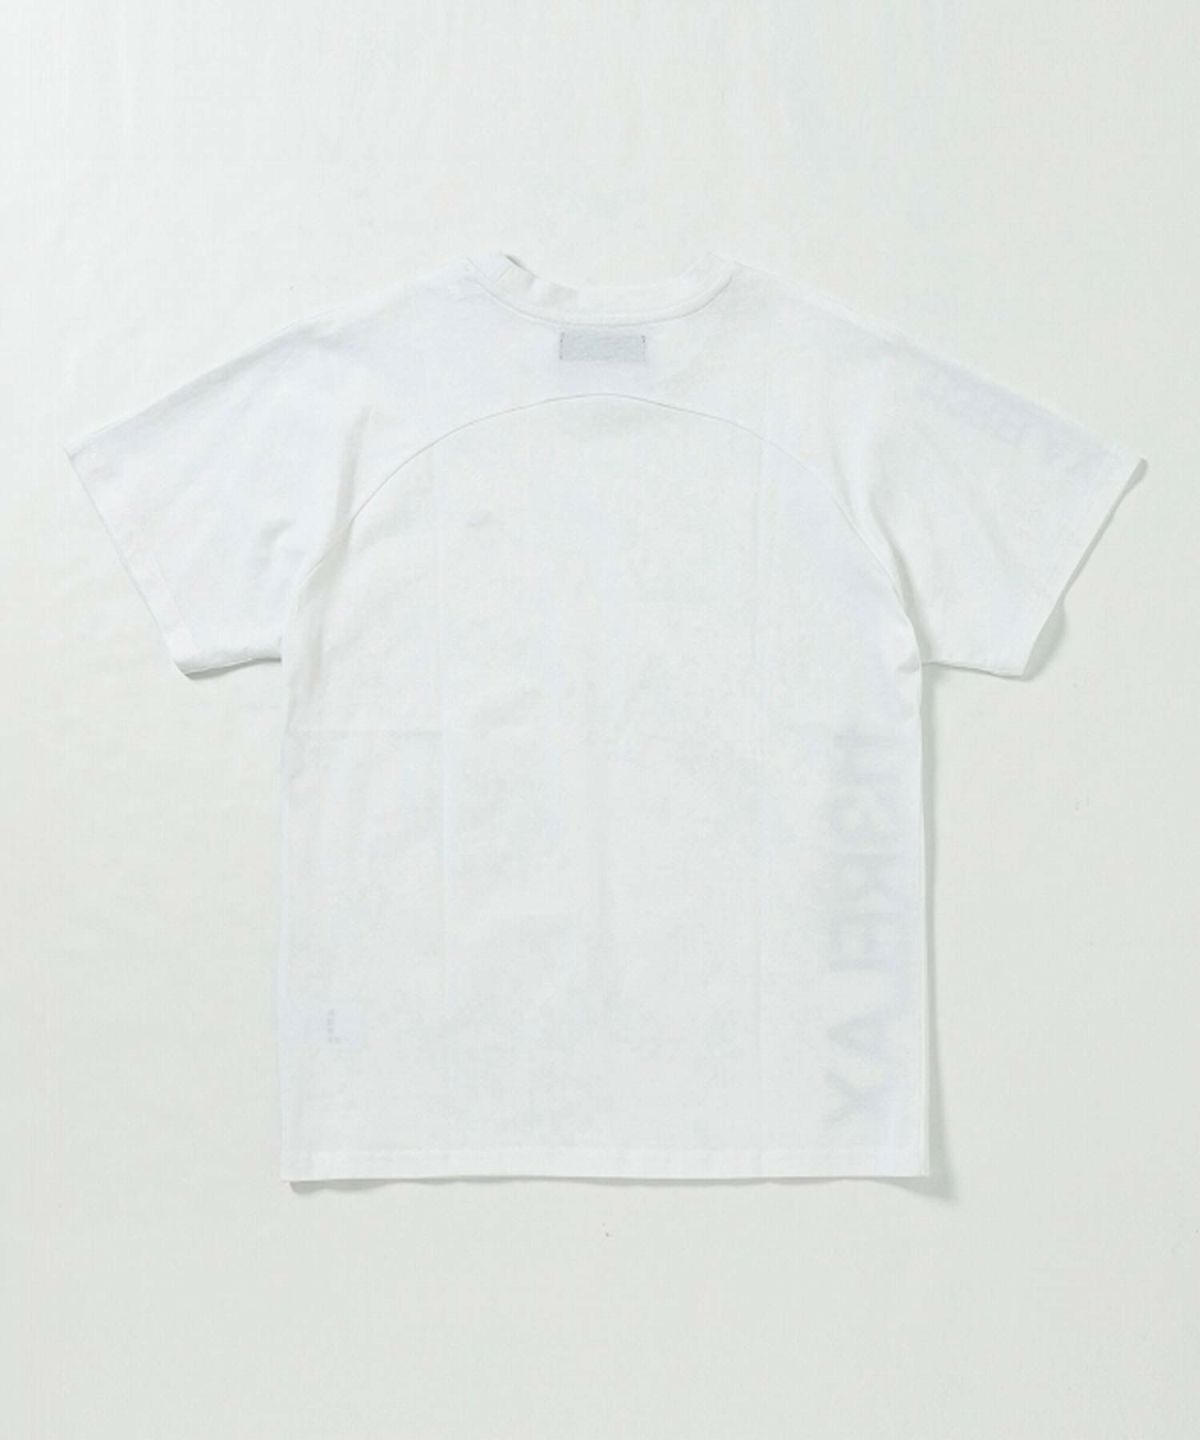 1PIU1UGUALE3 RELAX(ウノピゥウノウグァーレトレ リラックス)ラインストーンサイドロゴ半袖Tシャツ